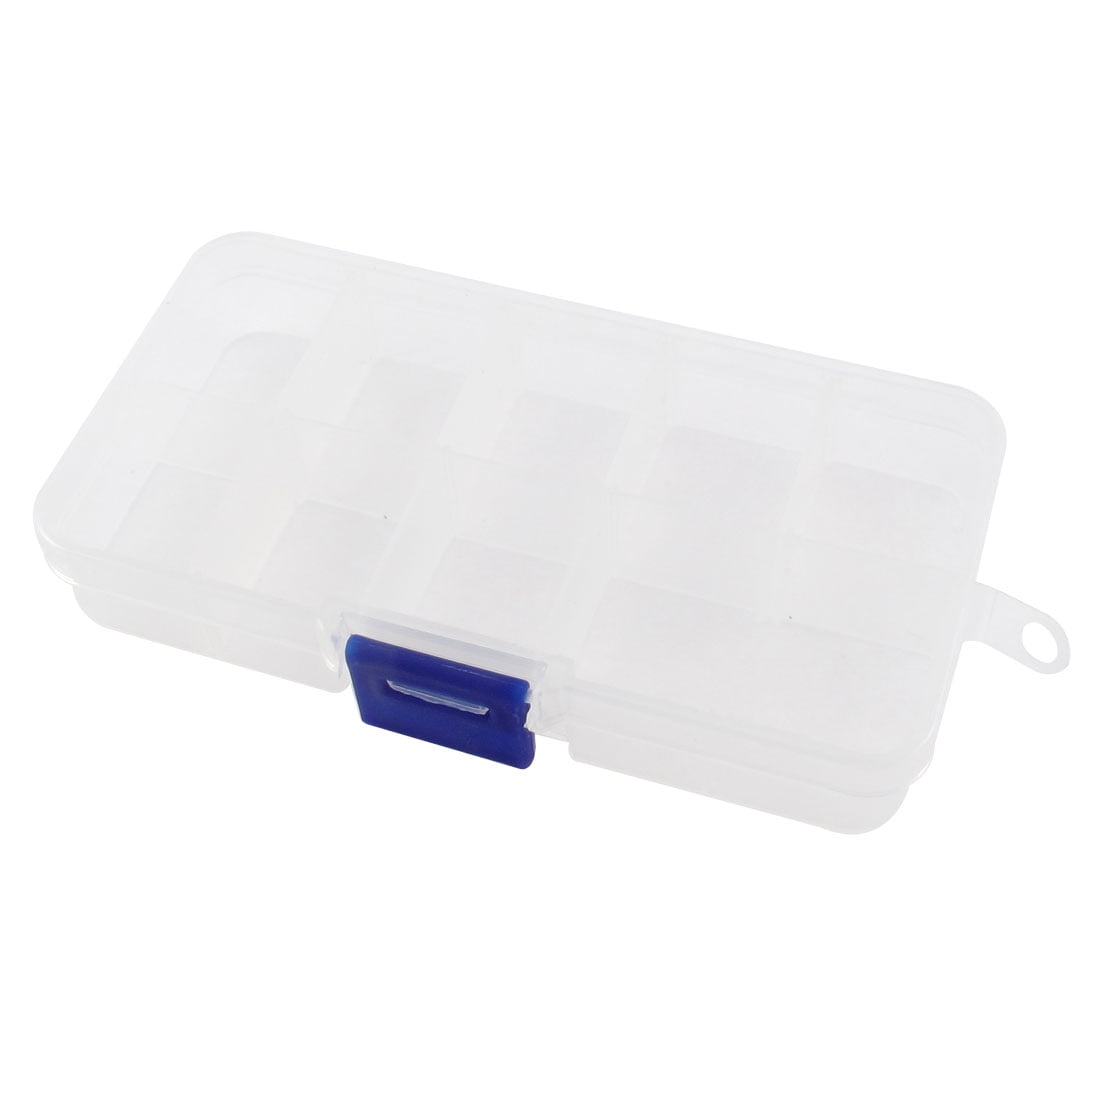 (2 Pack Clear Plastic Boxes | 5 Compartments Each | 1.25 (3.2 cm) x 3.5  (8.9 cm) Sections | 3.5 (8.9 cm) x 7 (17.8 cm) Box Dimensions | Versatile